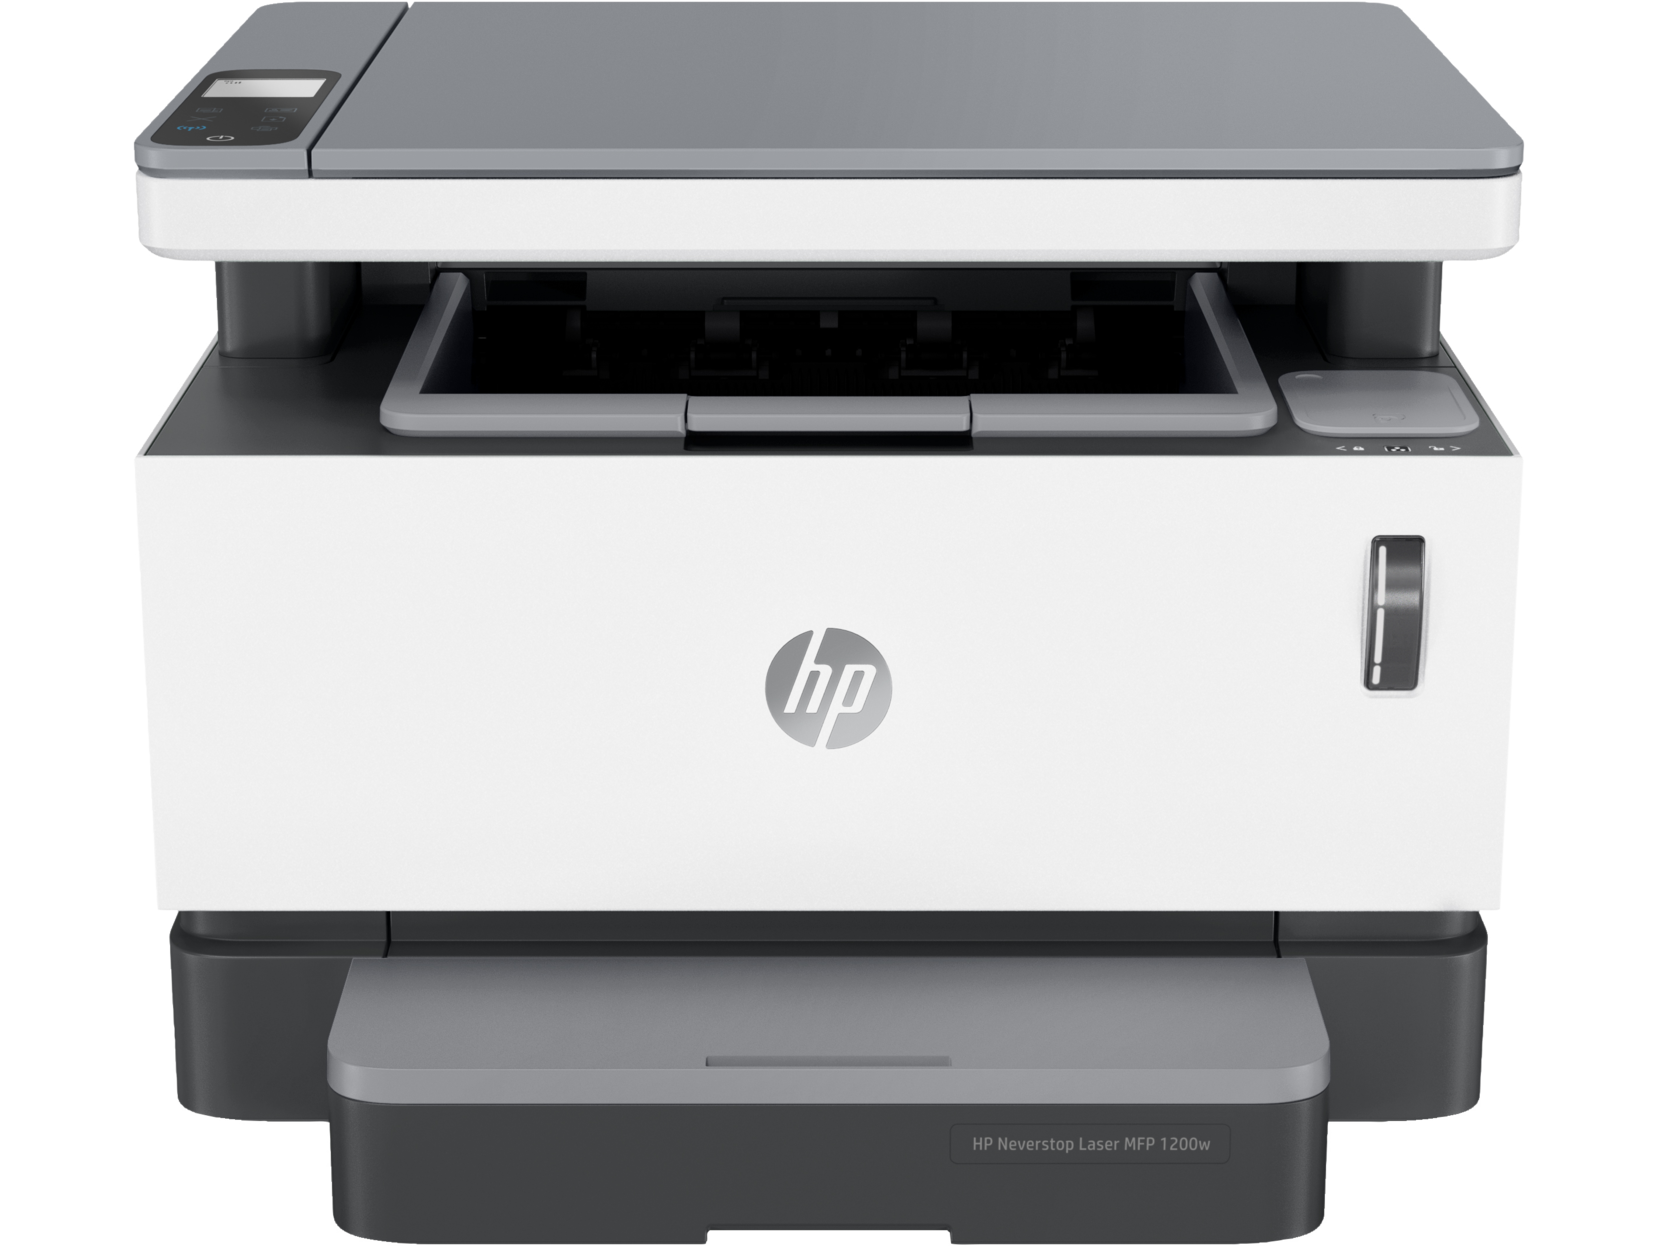 купить МФУ HP 4RY26A Neverstop Laser MFP 1200w Printer, A4, печать 600x600 dpi, 64 Мбайт/500 Мгц, 20 стр/мин, USB, WiFi в Алматы